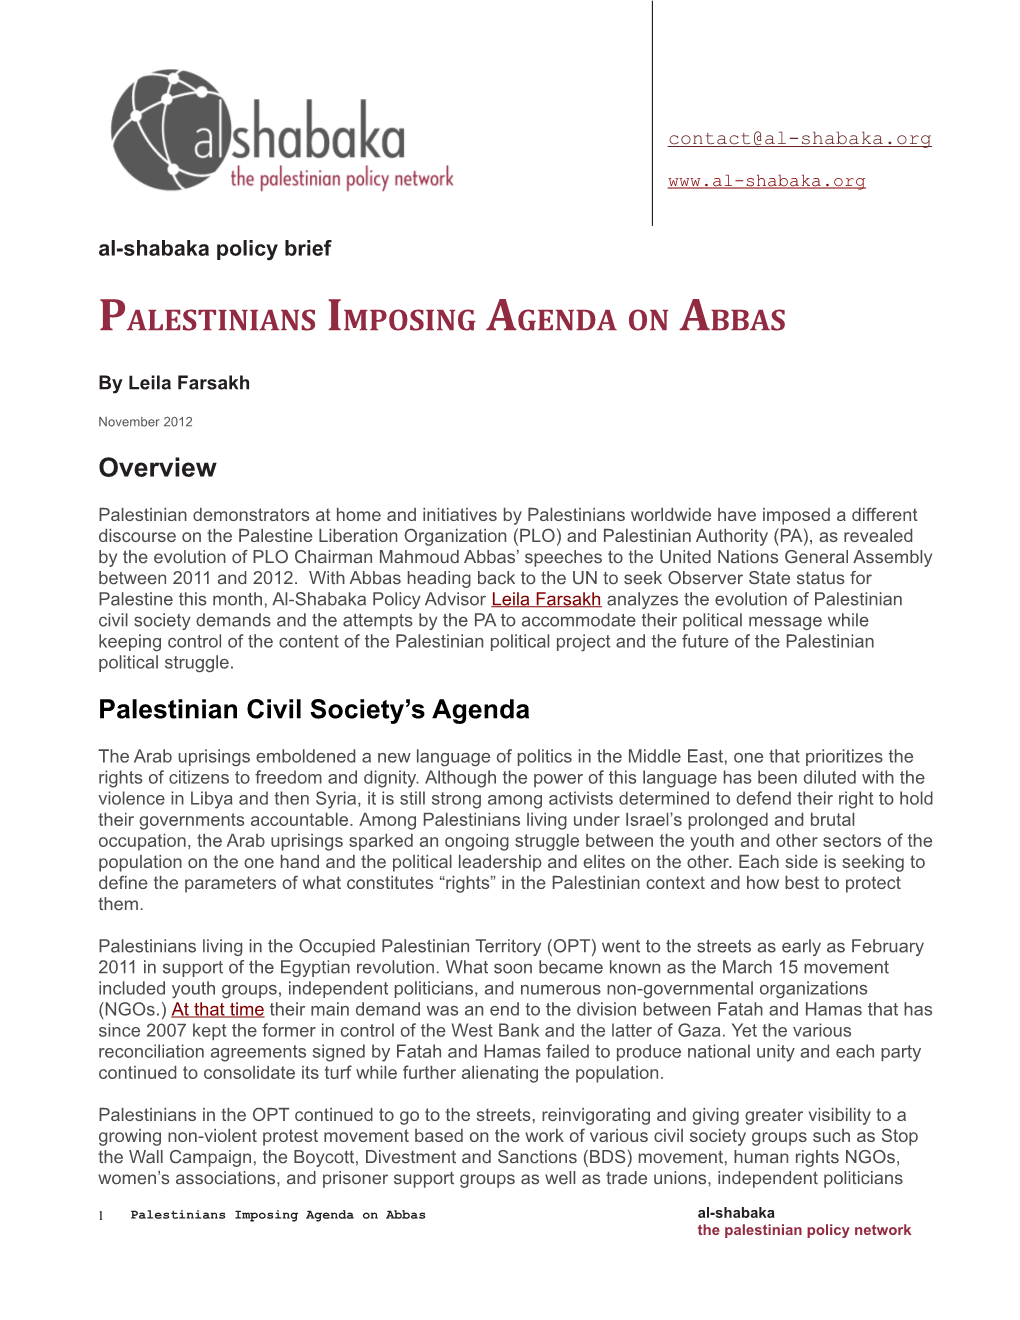 Palestinians Imposing Agenda on Abbas